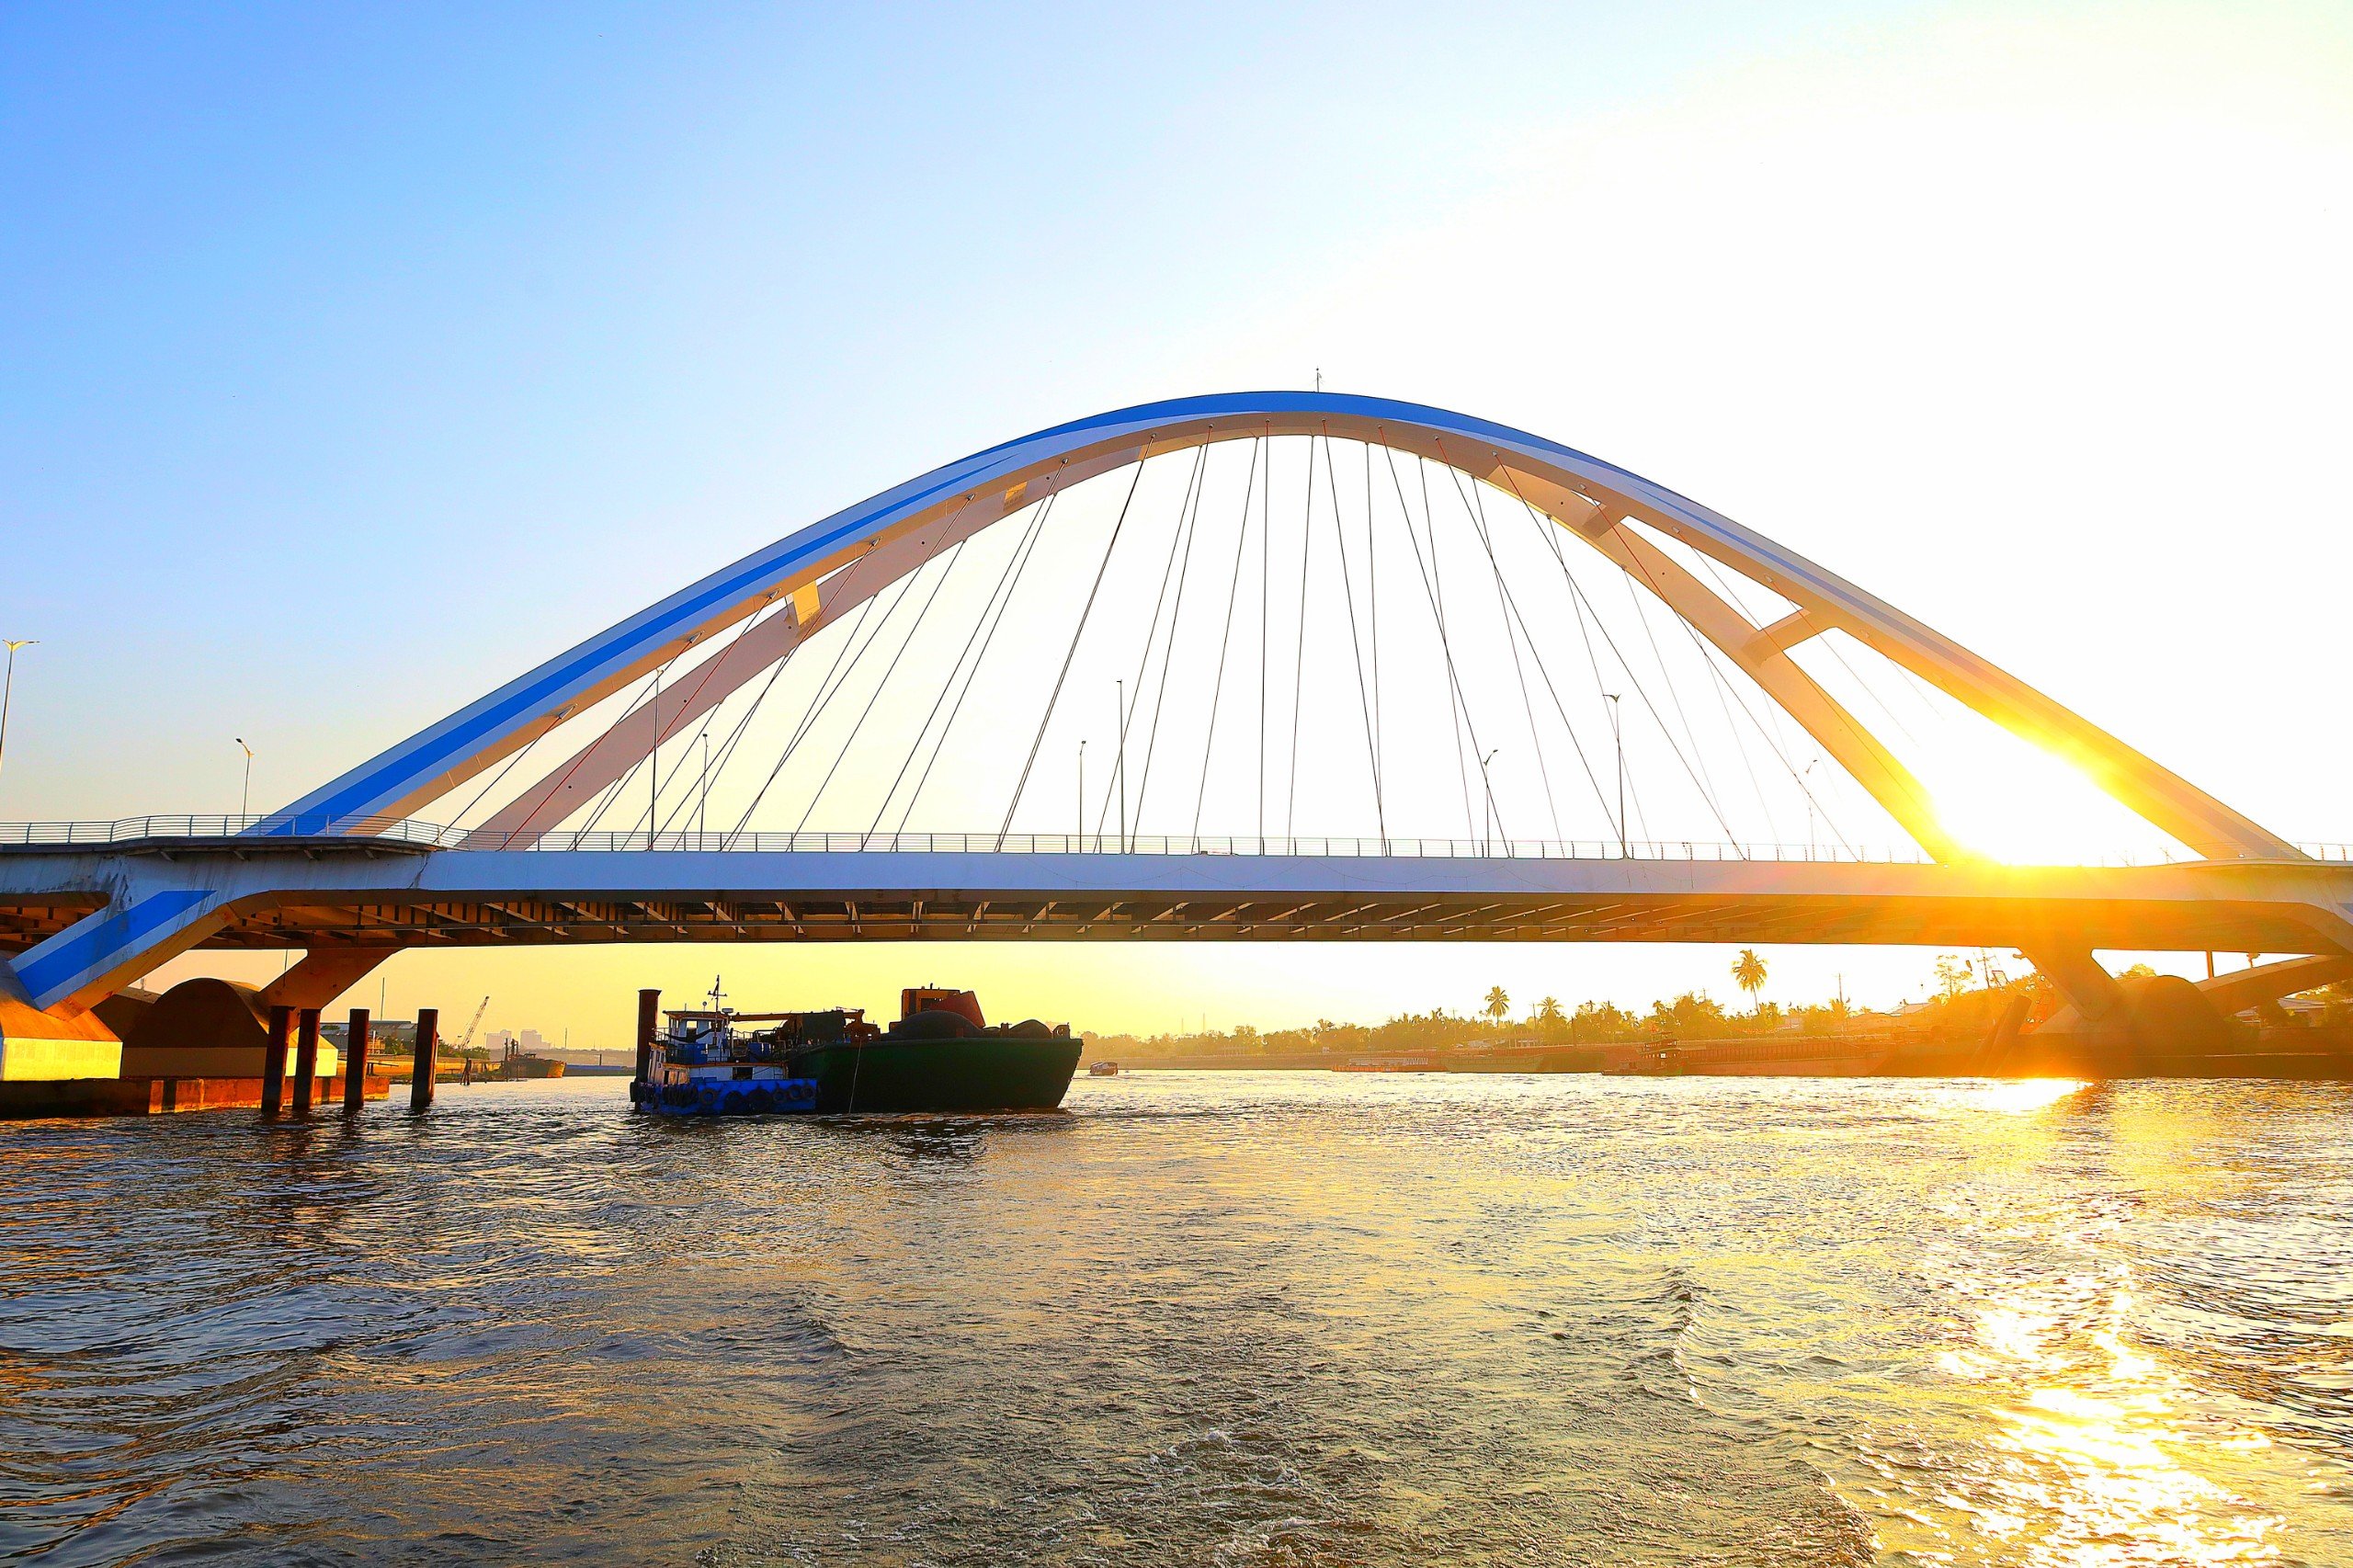 Cầu Trần Hoàng Na vừa được đưa vào sử dụng đẹp lung linh khi ánh bình minh vừa ló dạng, nơi đây đang trở thành địa điểm check in mới của các du khách khi tham quan Chợ nổi Cái Răng.